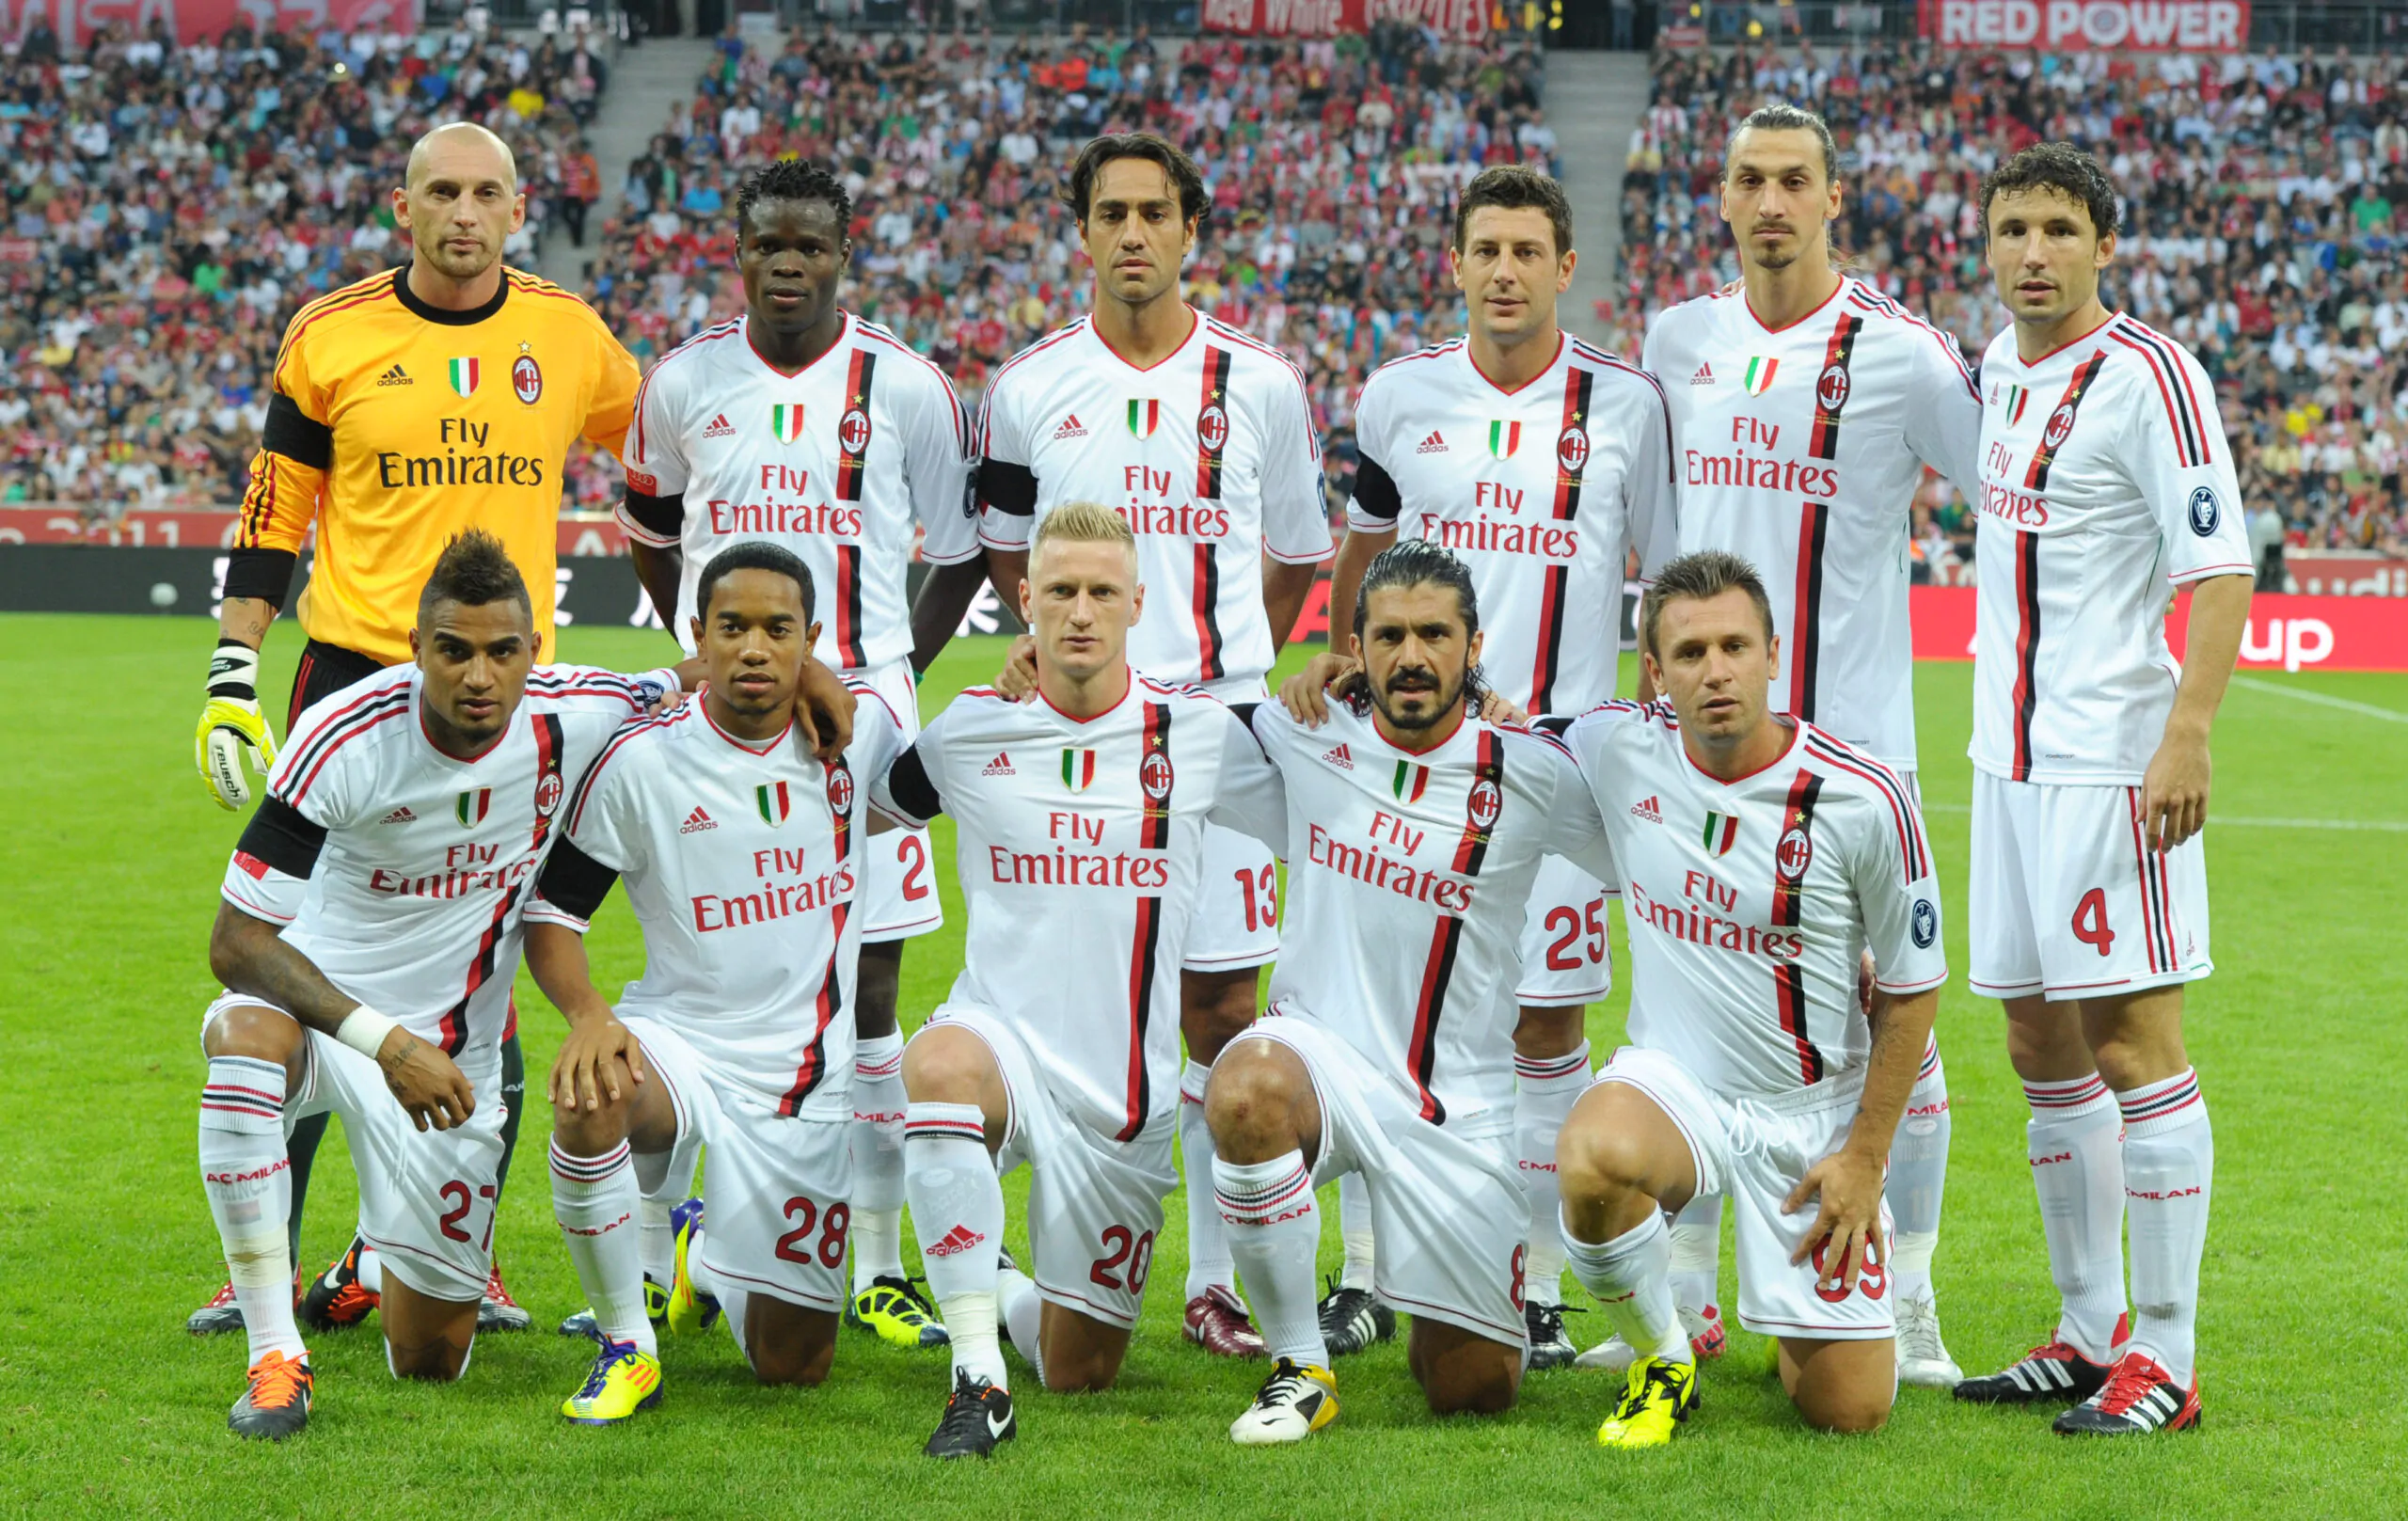 “Non pensavo di diventare allenatore”: l’ex Milan a sorpresa